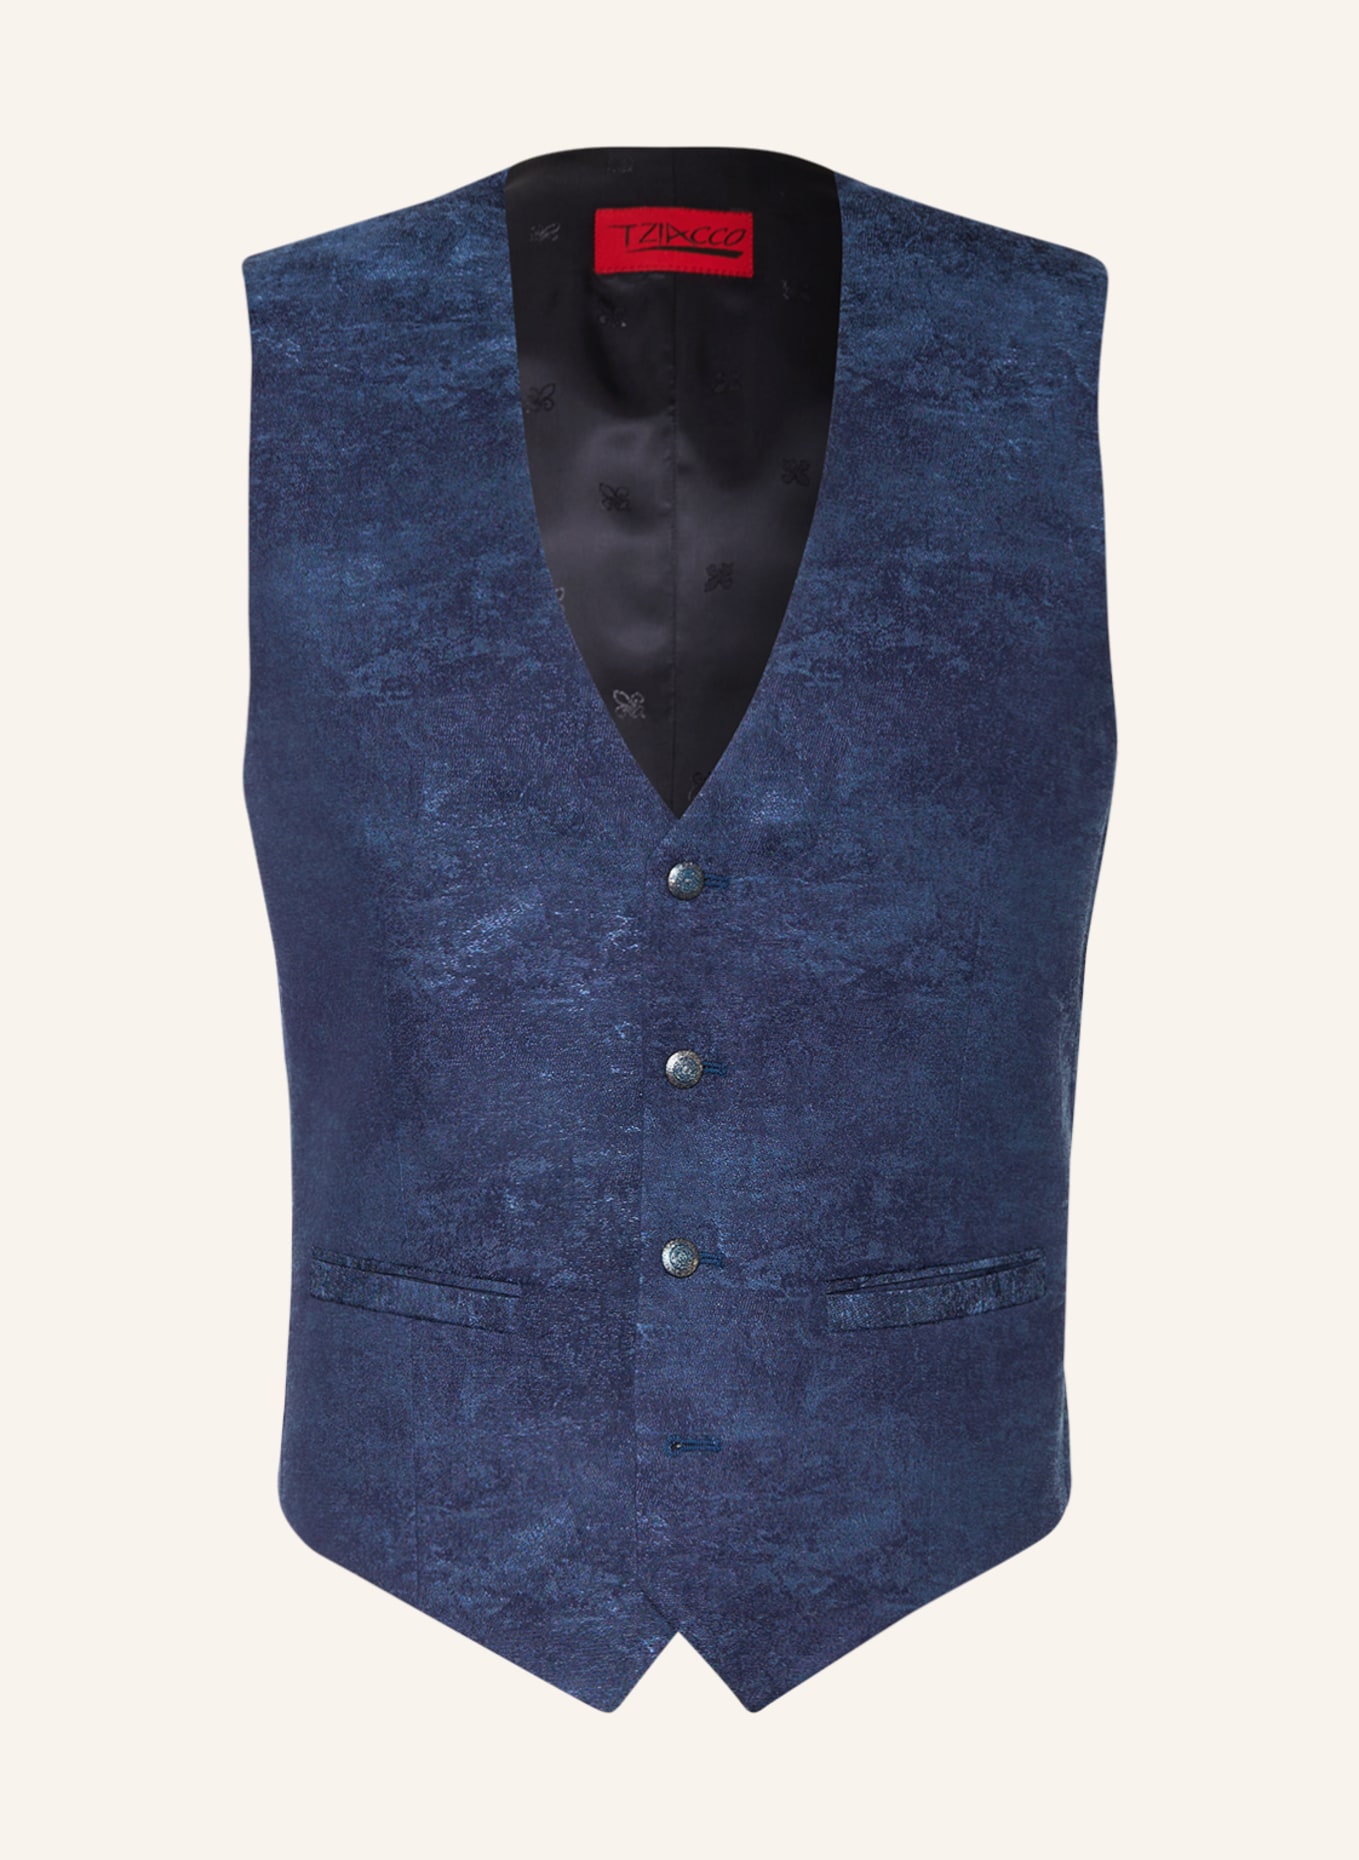 WILVORST Suit vest extra slim fit, Color: DARK BLUE (Image 1)